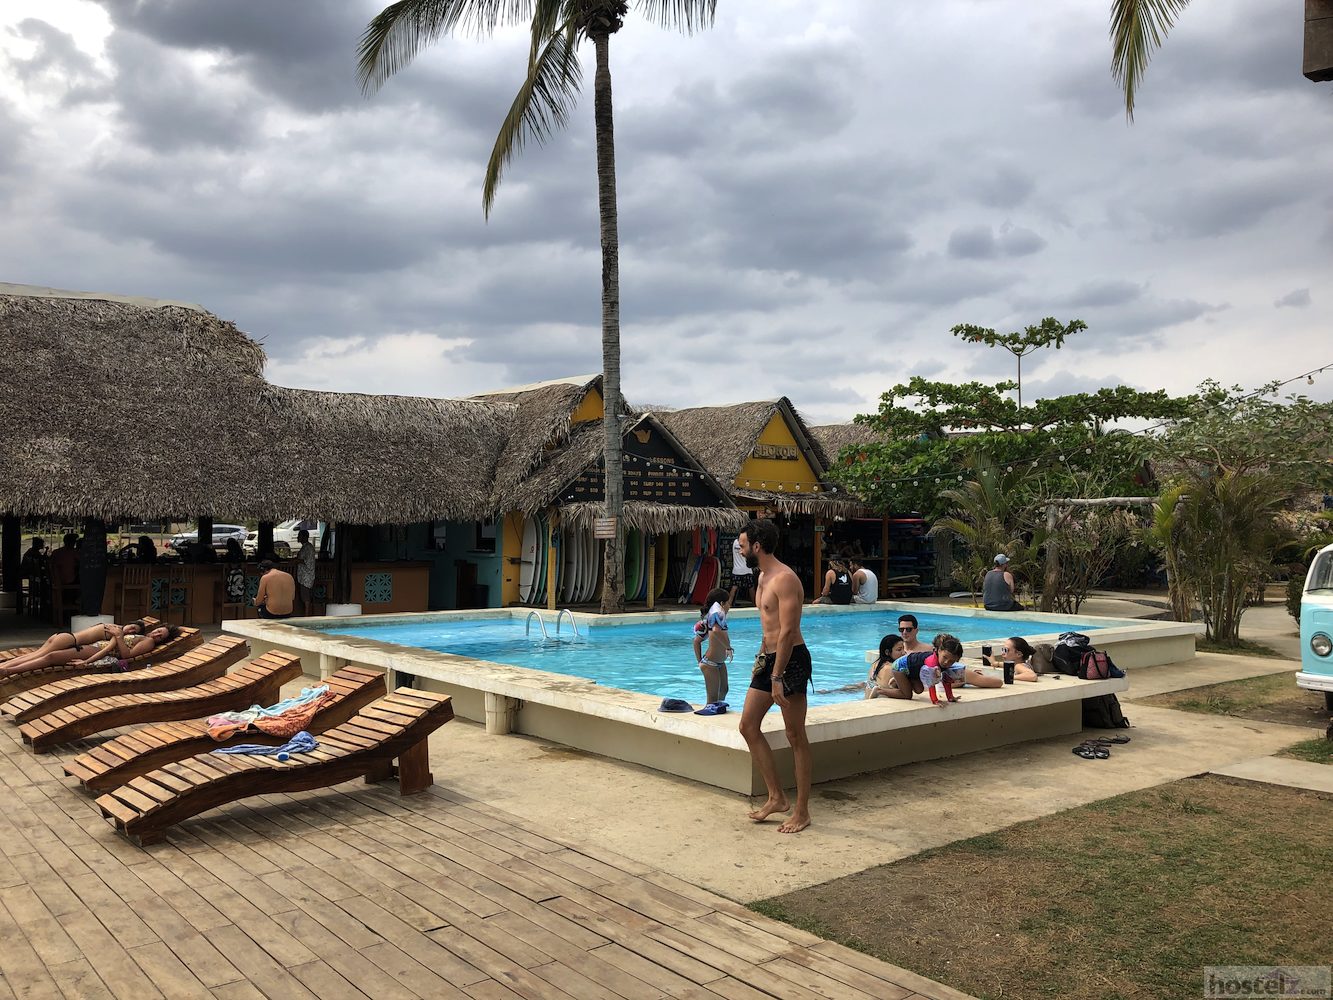 Selina Hostel Playa Venao, Las Escobas del Venado